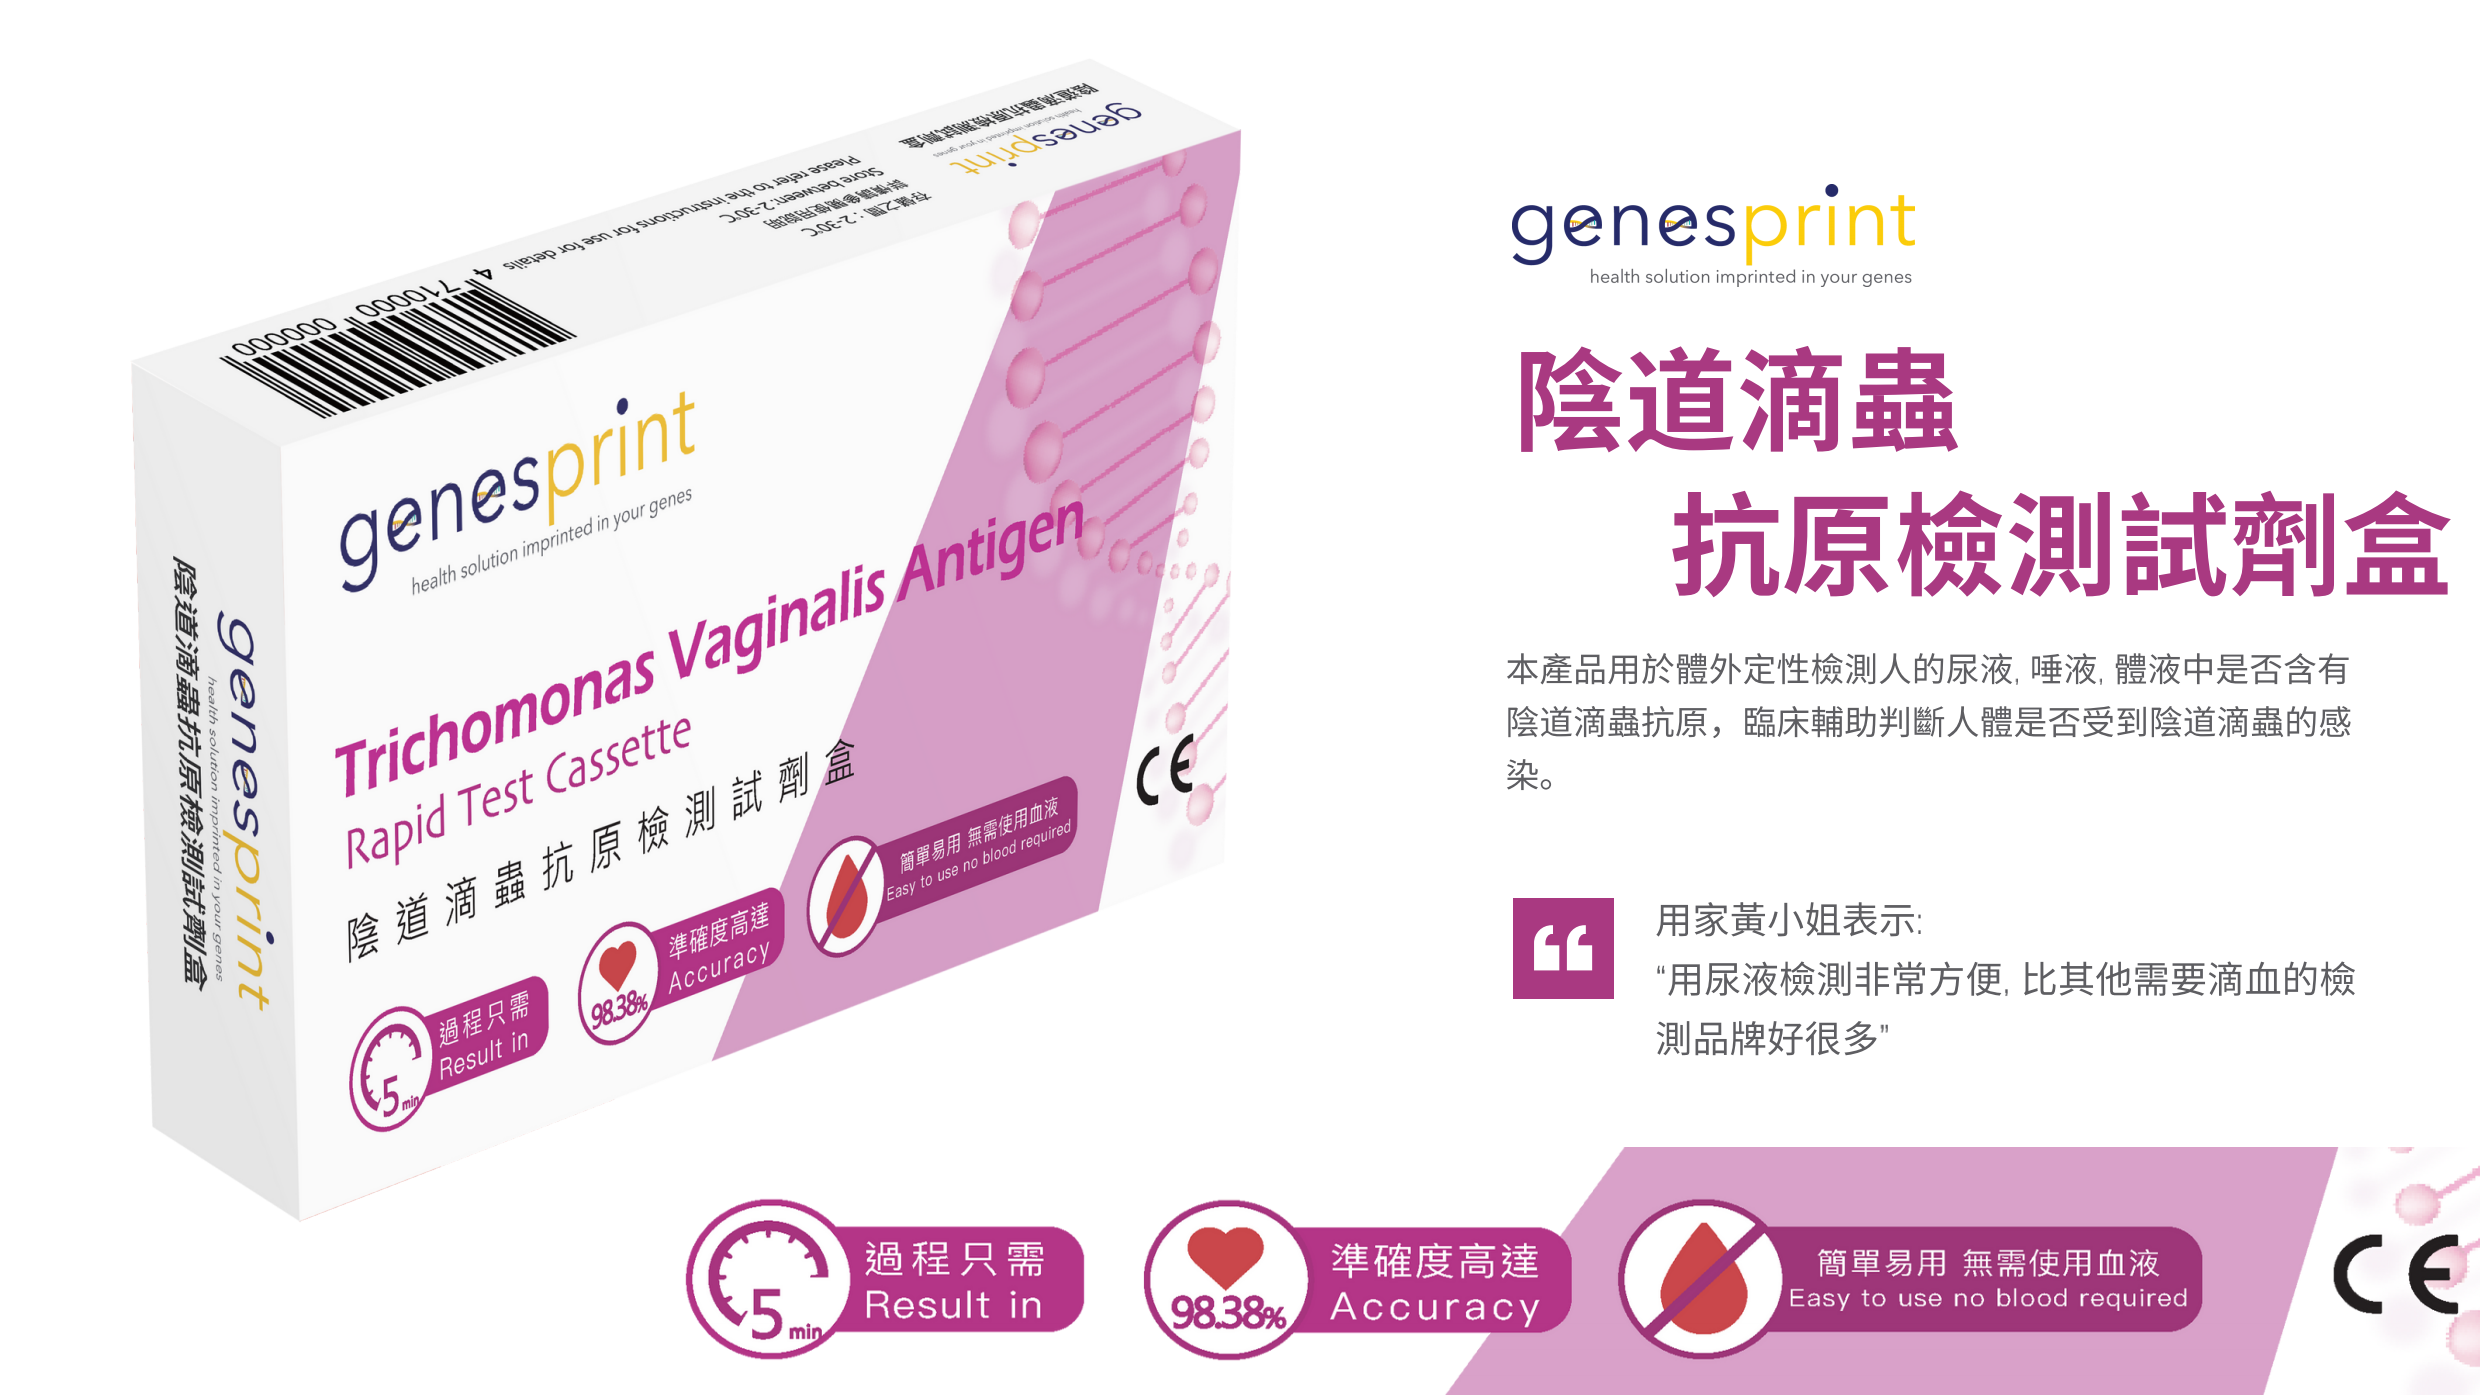 Genesprint - 人類免疫缺陷病毒（HIV）1/2型抗體檢測試劑盒